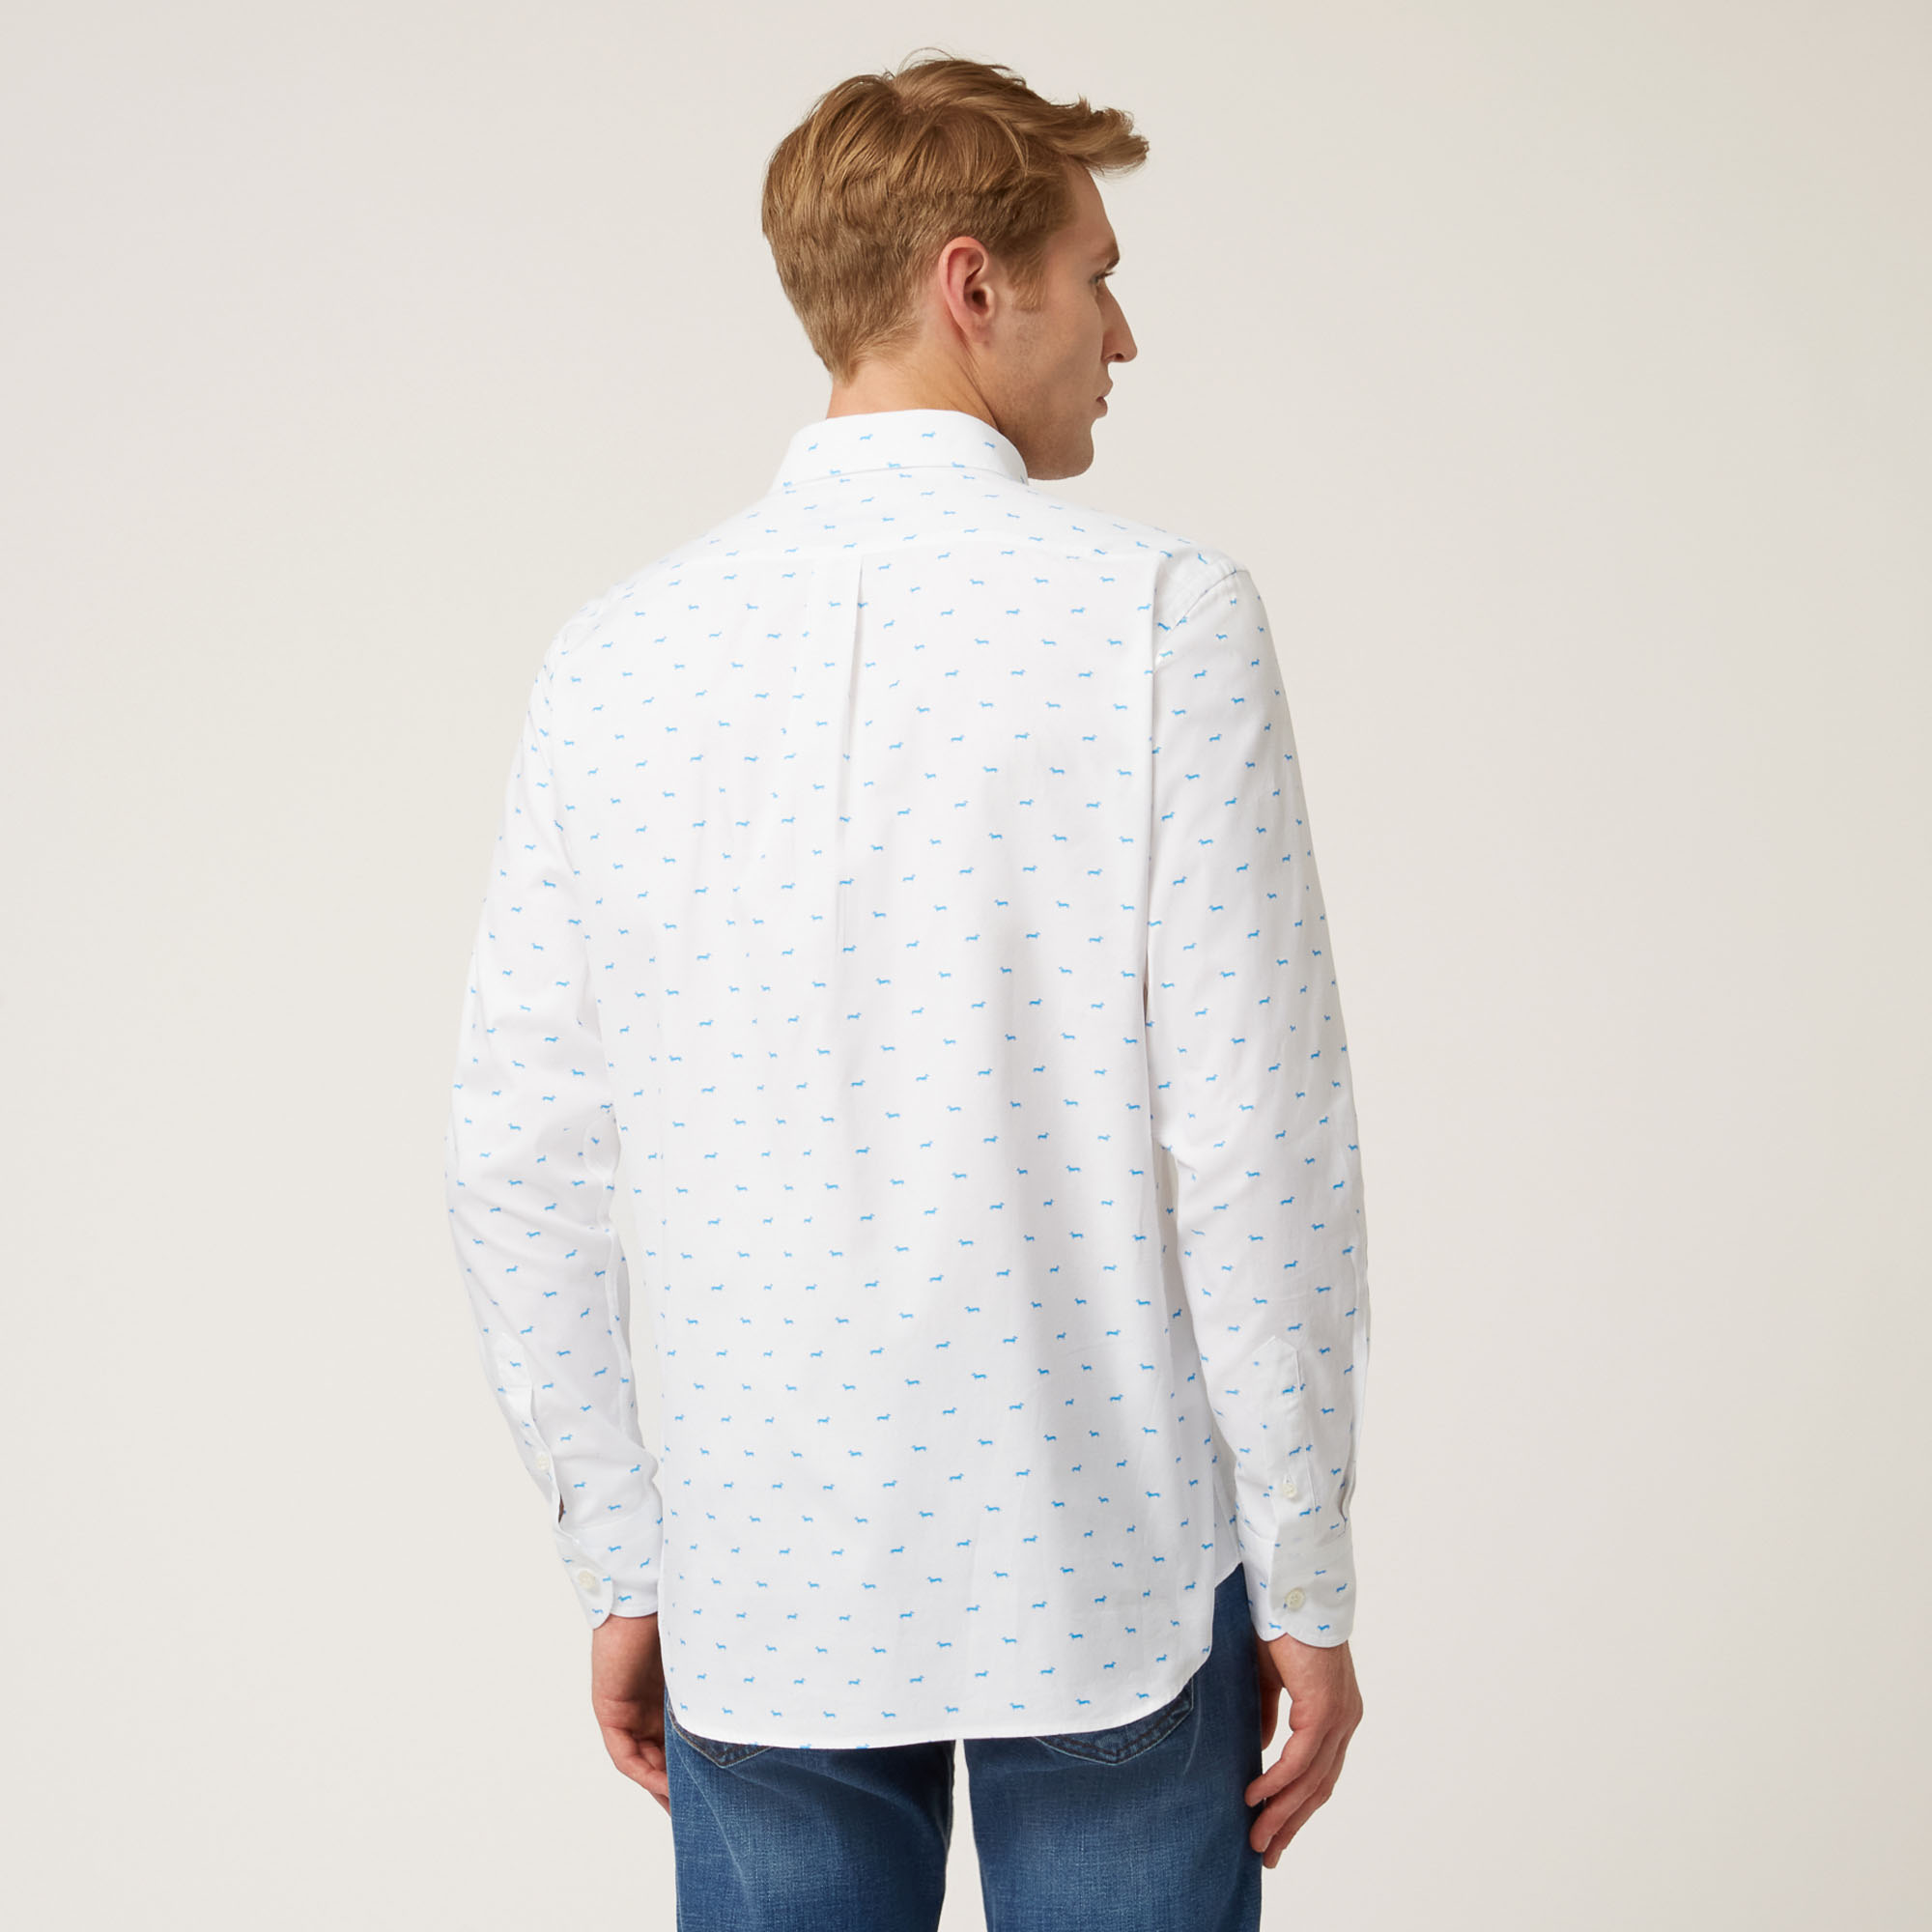 Camisa De Algodón Con Motivo Integral De Teckels, Blanco, large